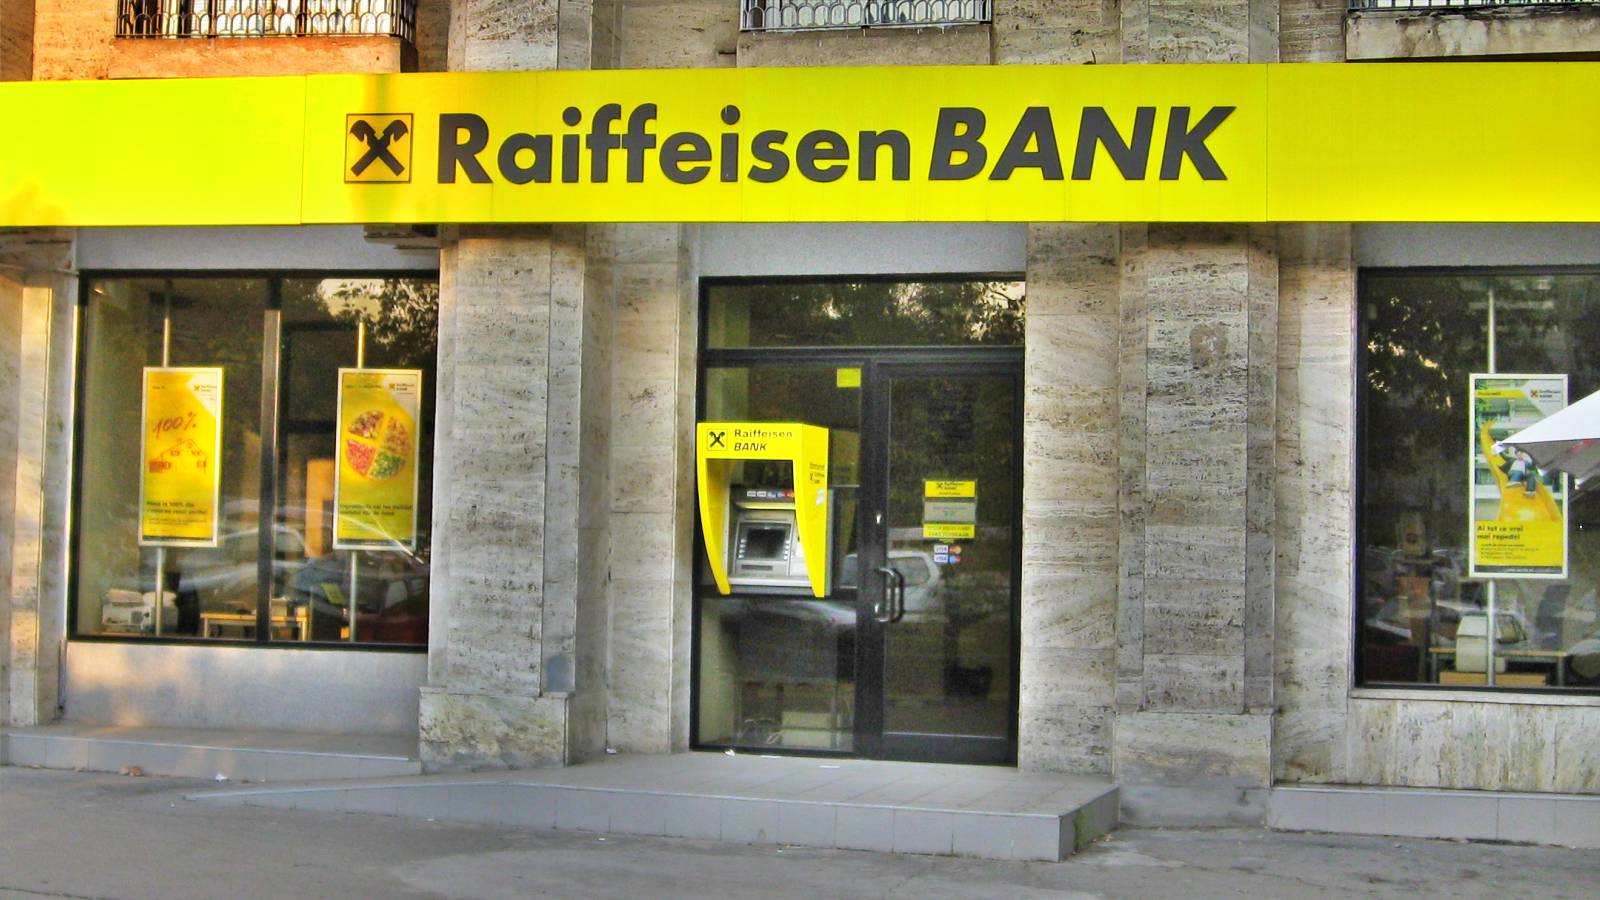 Raiffeisen Bank UWAGA Wiadomość, którą klienci muszą znać